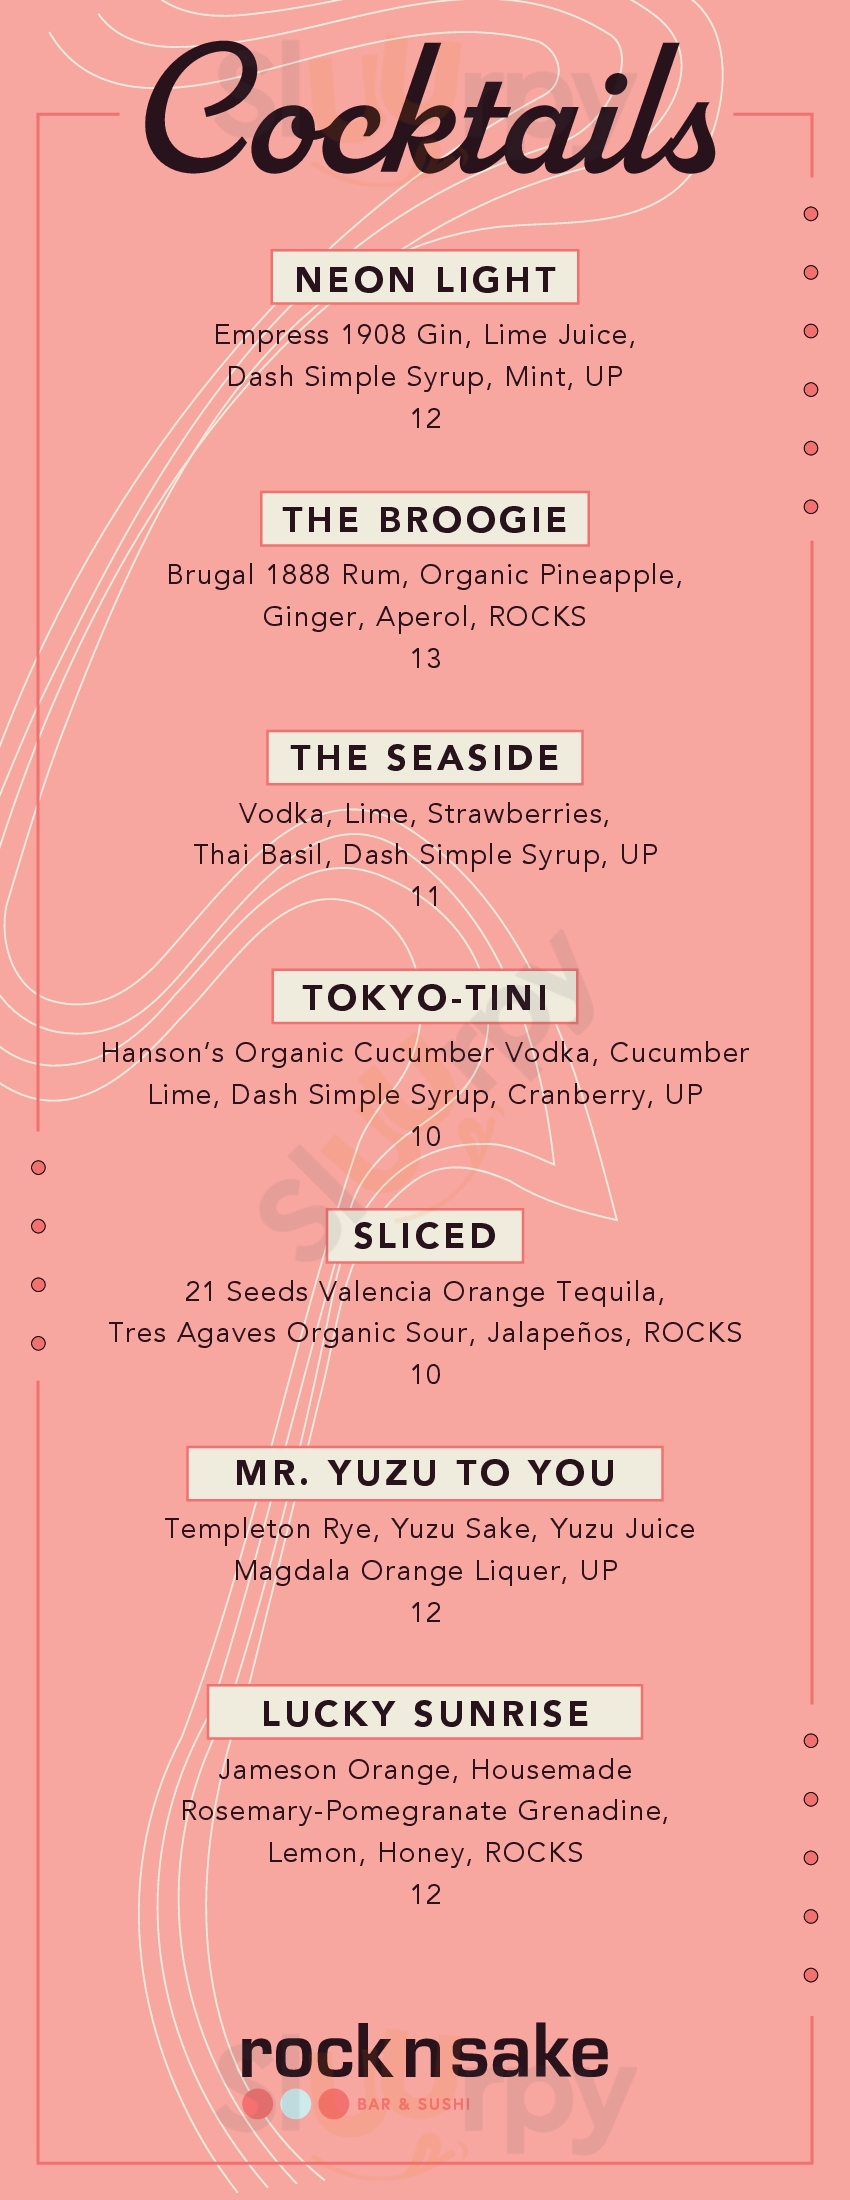 Rock-n-sake Bar & Sushi Lafayette Menu - 1